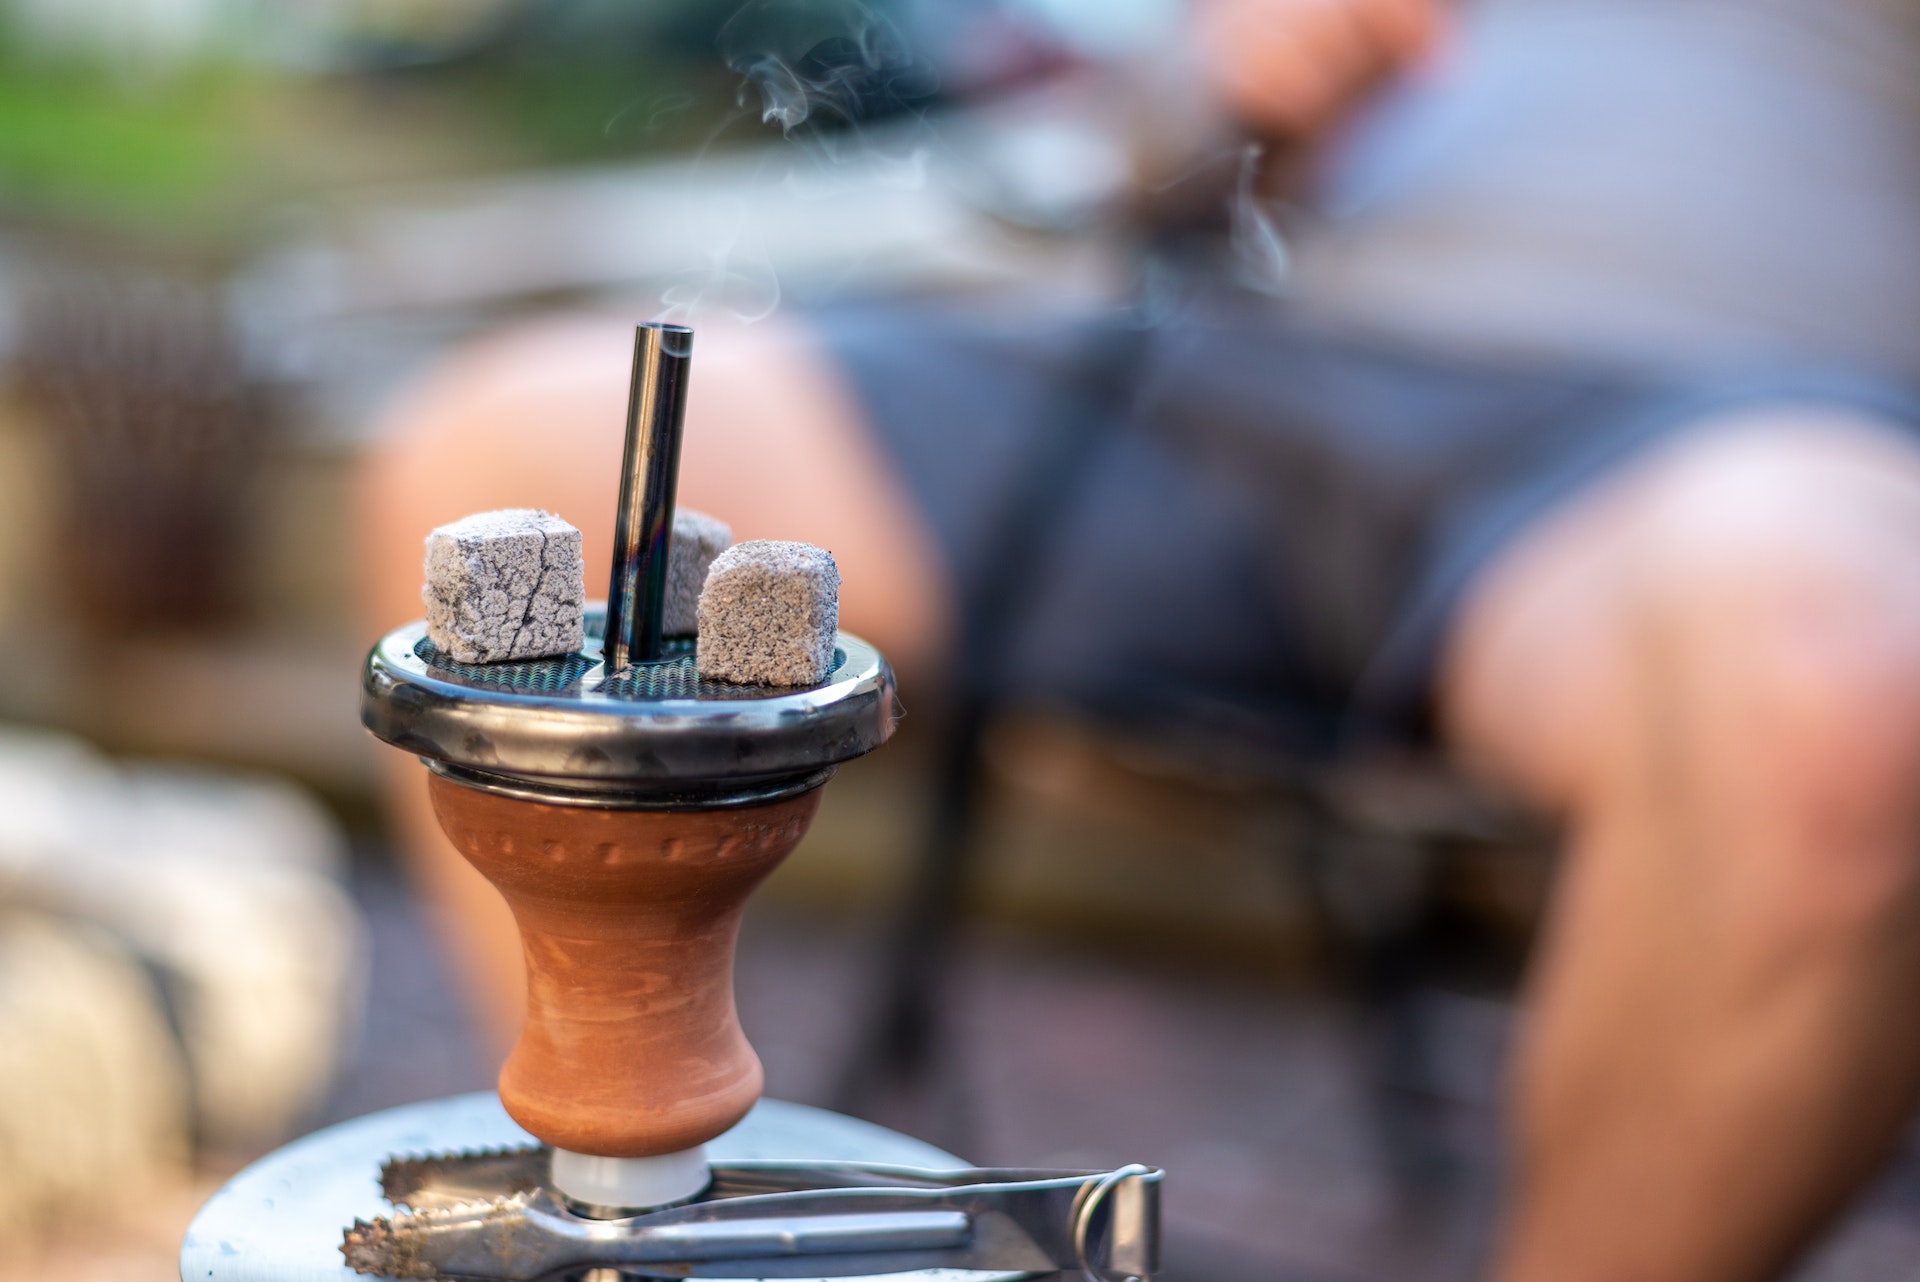 Tytoń do shishy – jakie smaki wybrać, by odkryć prawdziwy aromat?